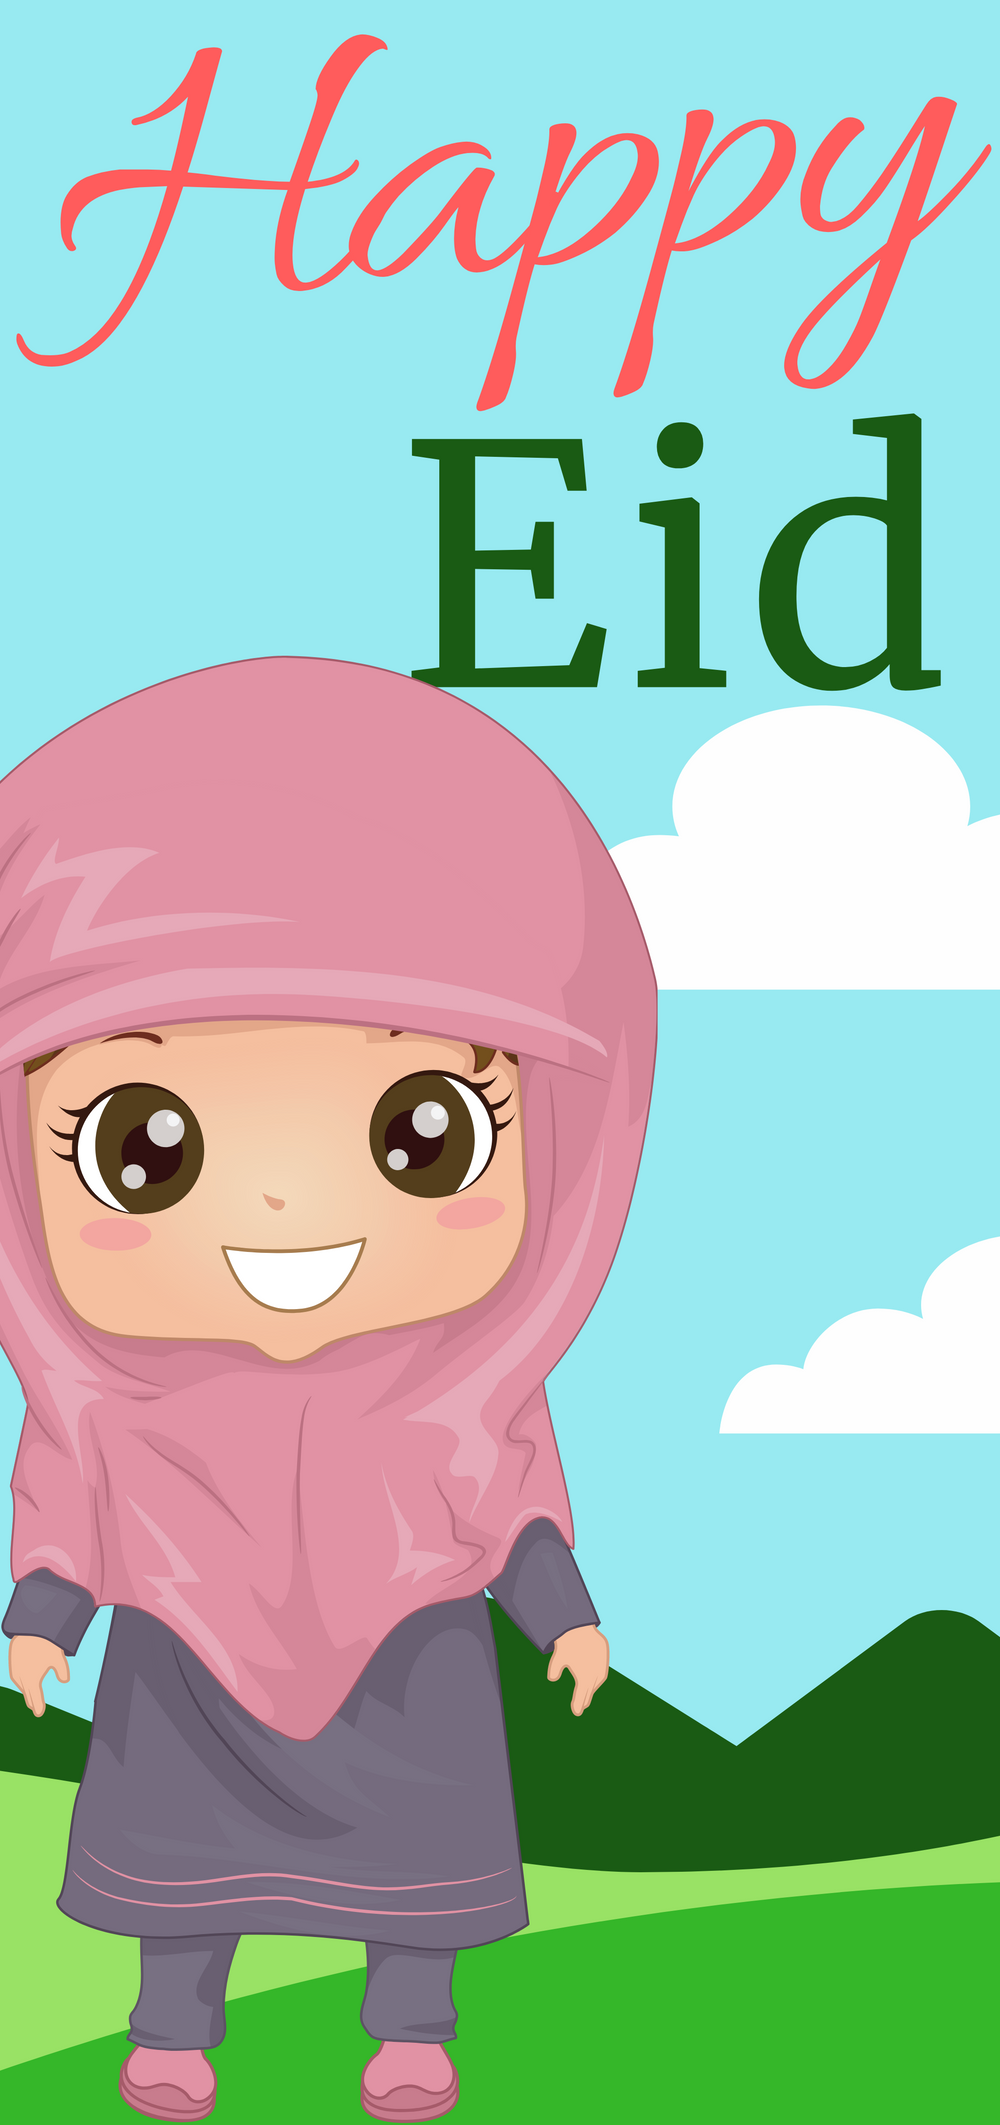 10 Pack of The Little Girl Happy Eid Money Envelope